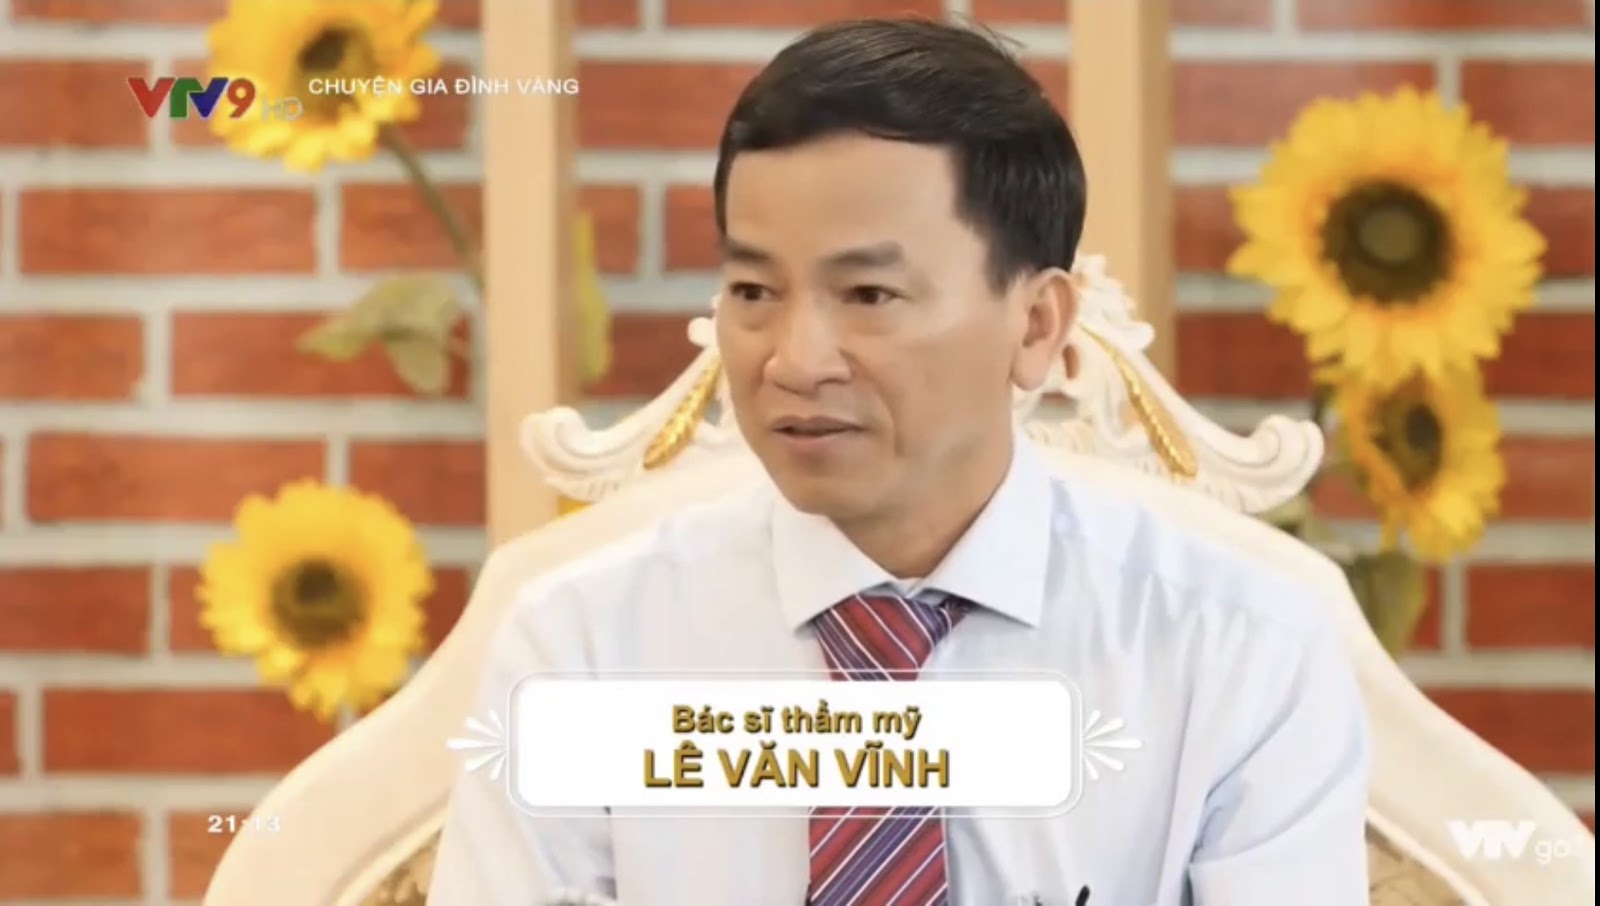 Trẻ hóa vùng mắt cùng với bác sĩ Lê Văn Vĩnh